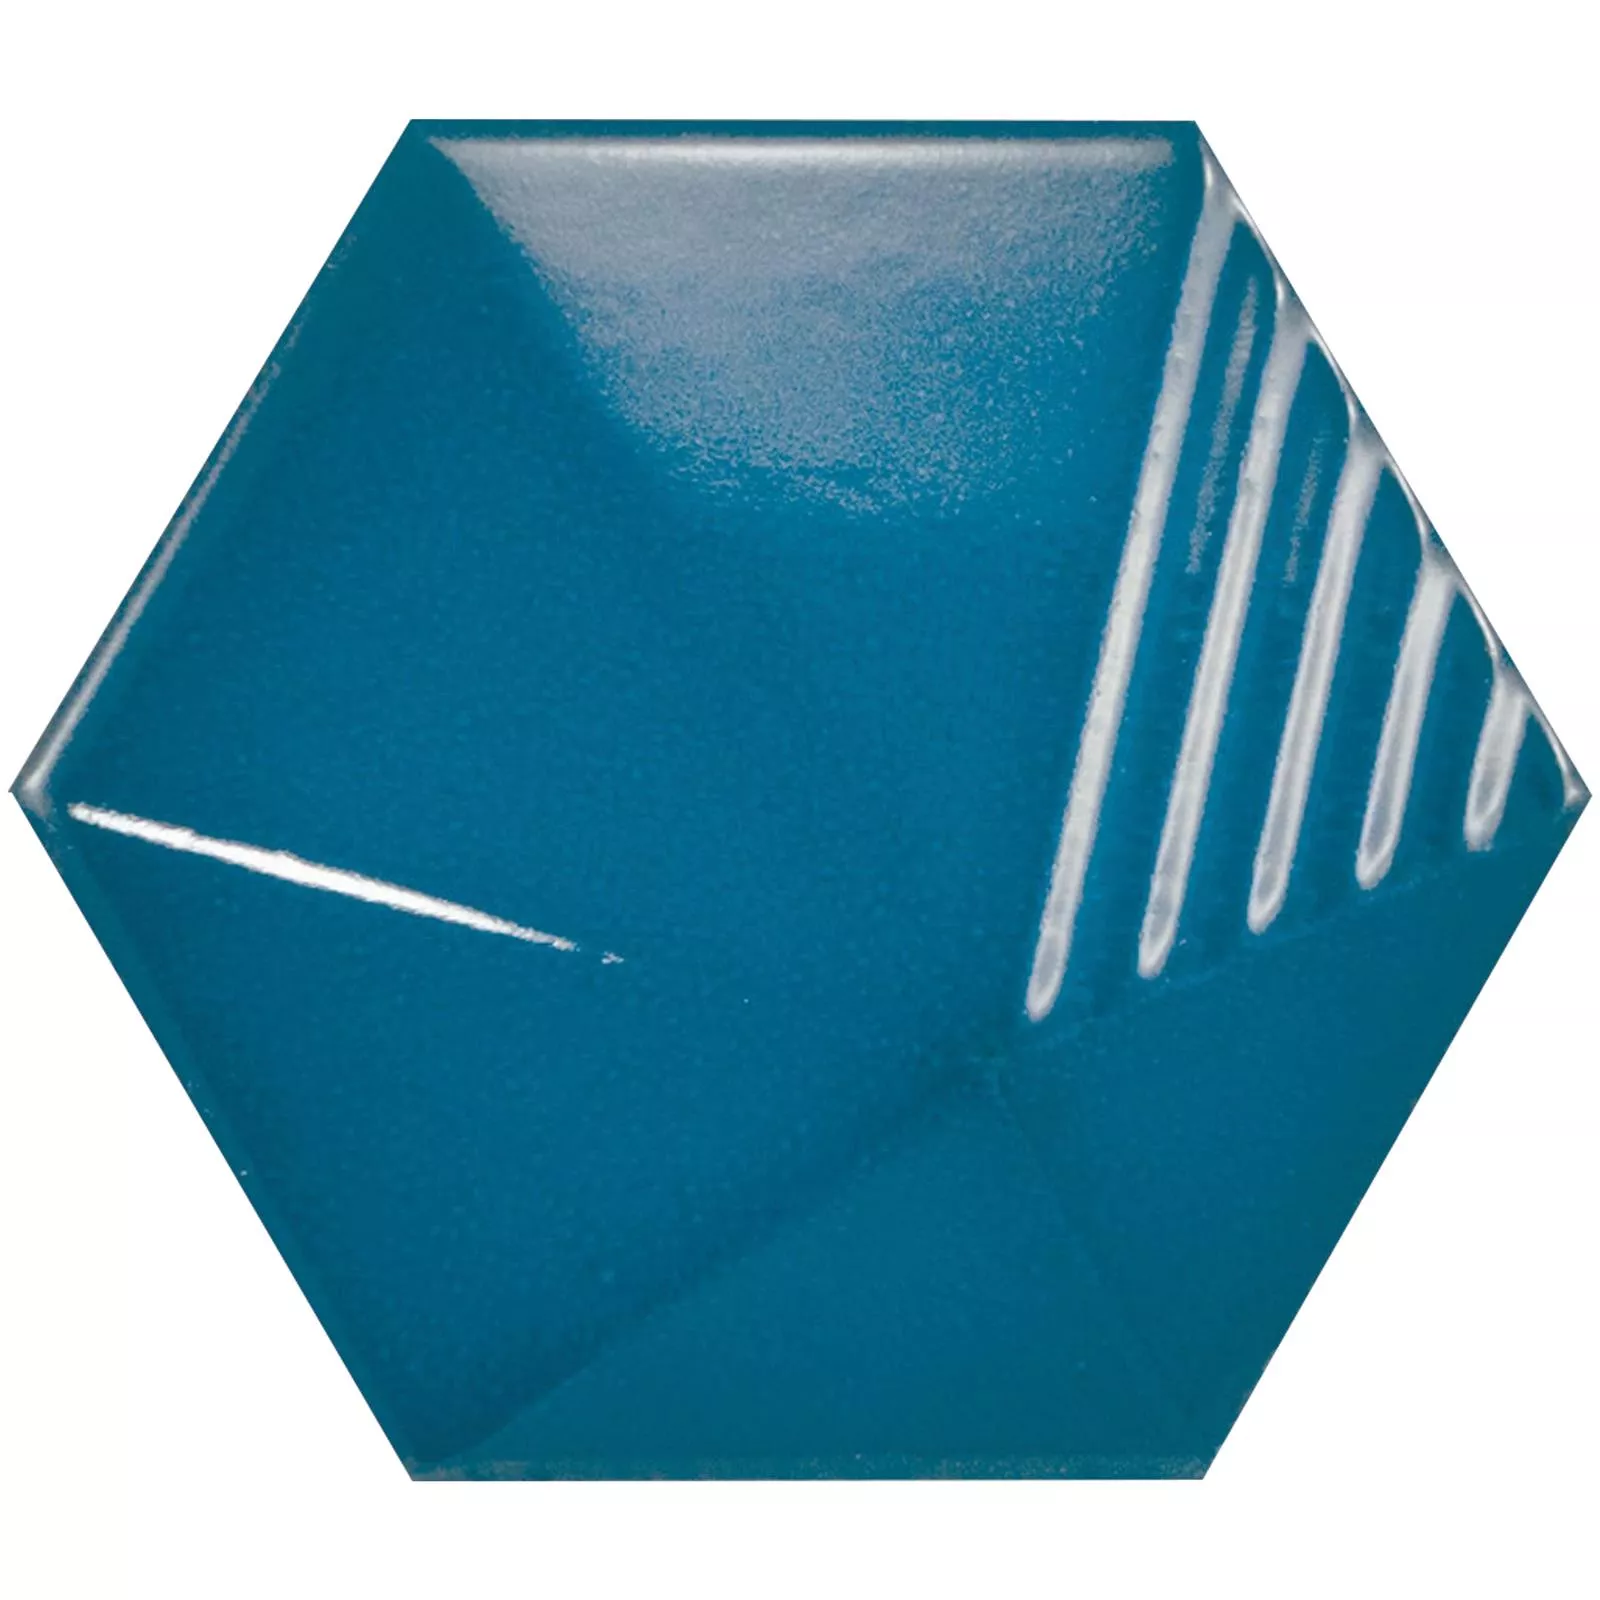 Muestra Revestimientos Rockford 3D Hexagonales 12,4x10,7cm Azul